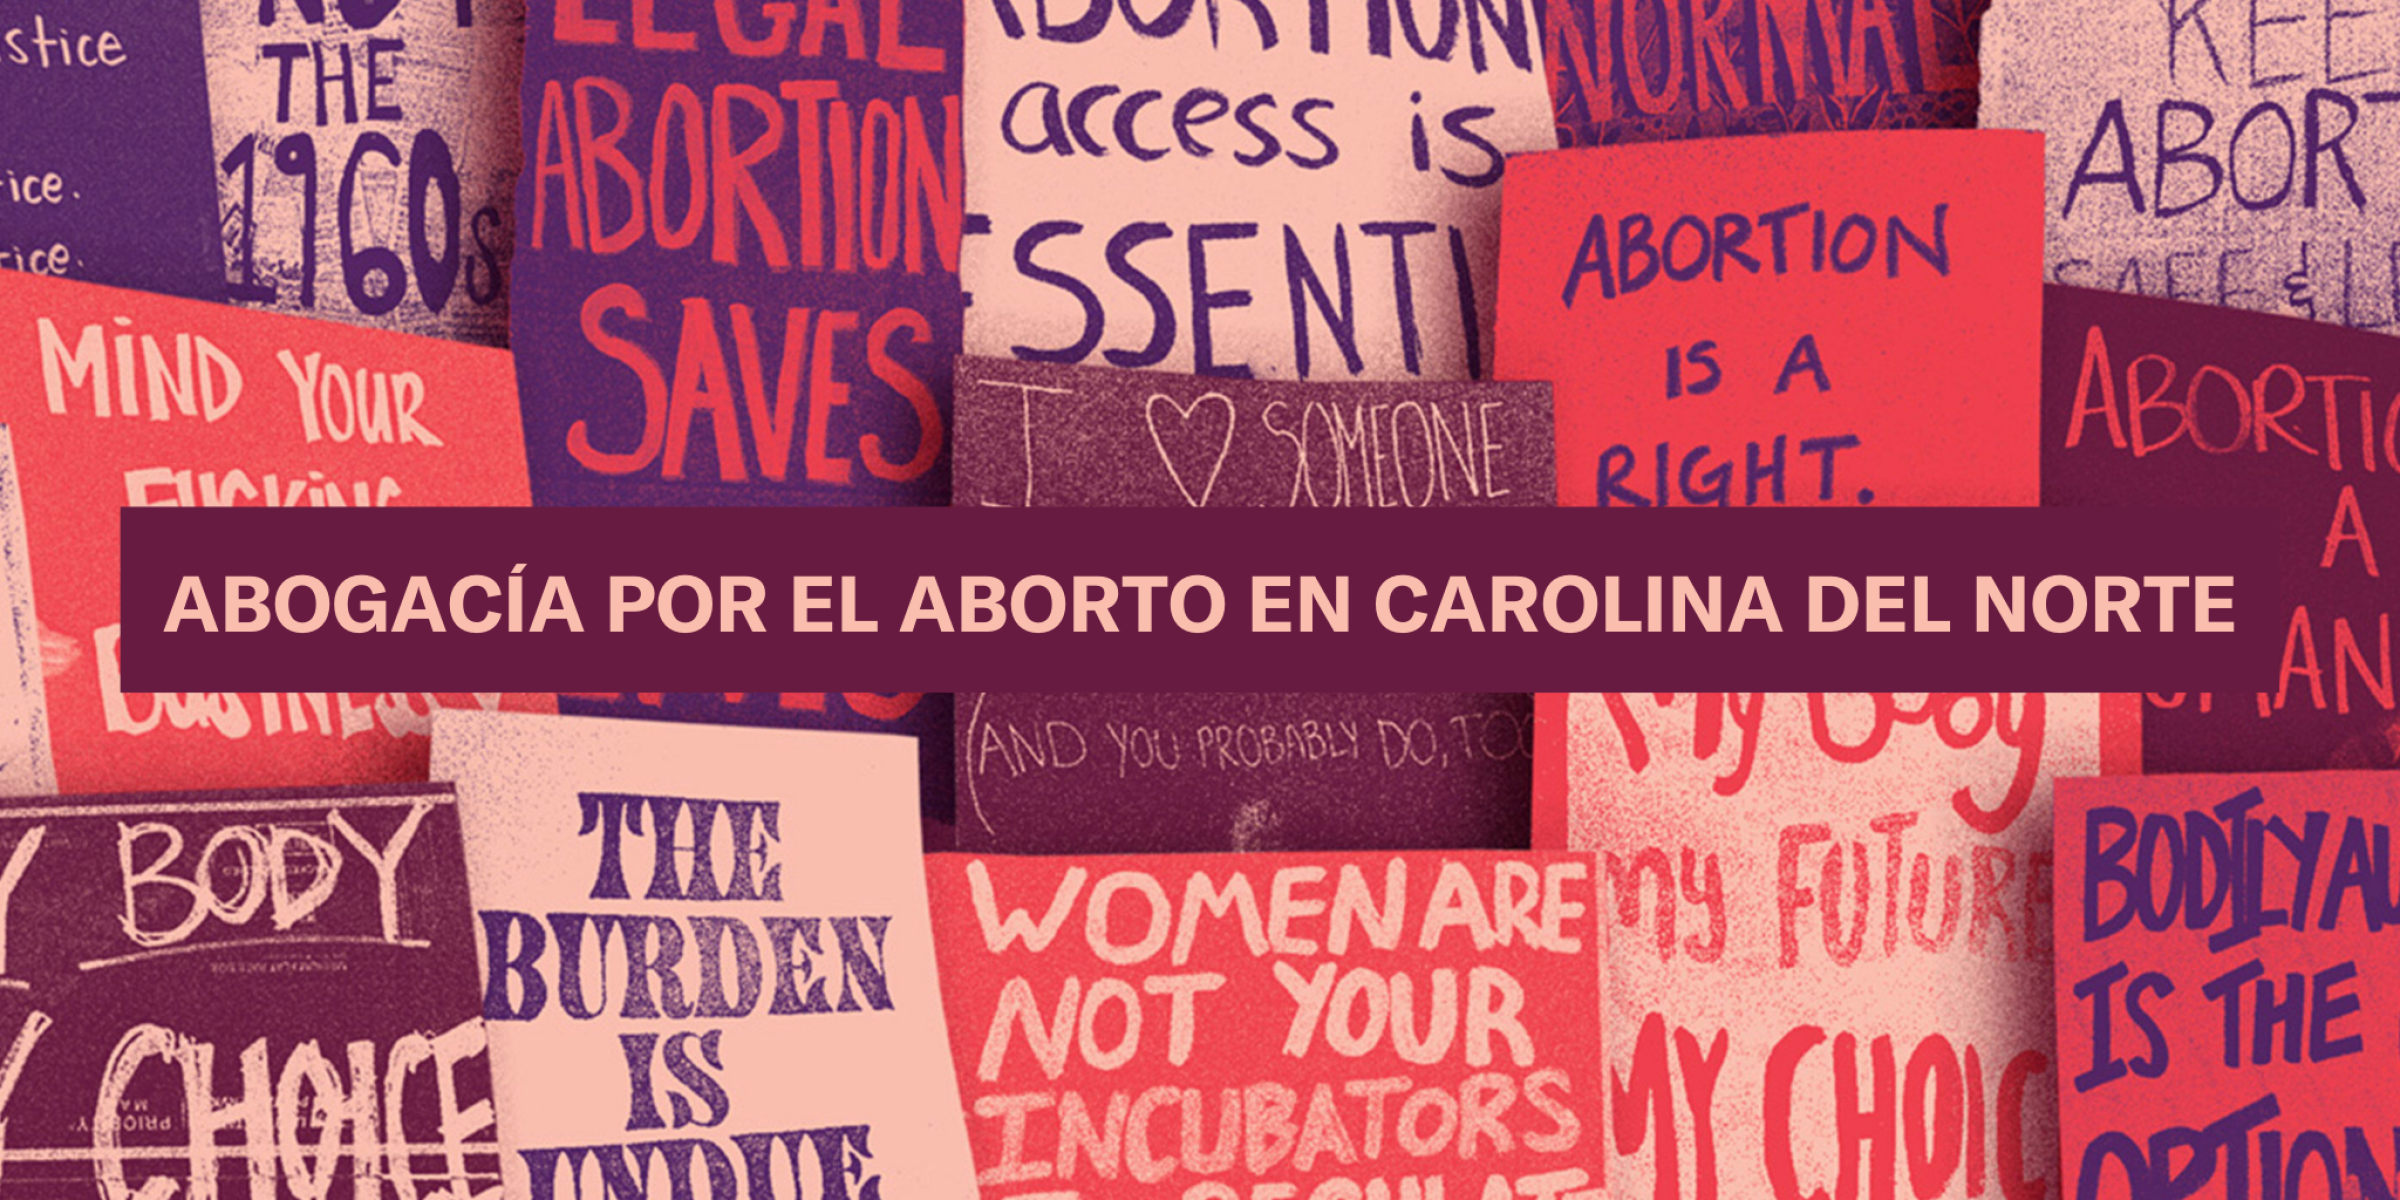 Abogacia Por El Aborto En Carolina Del Norte